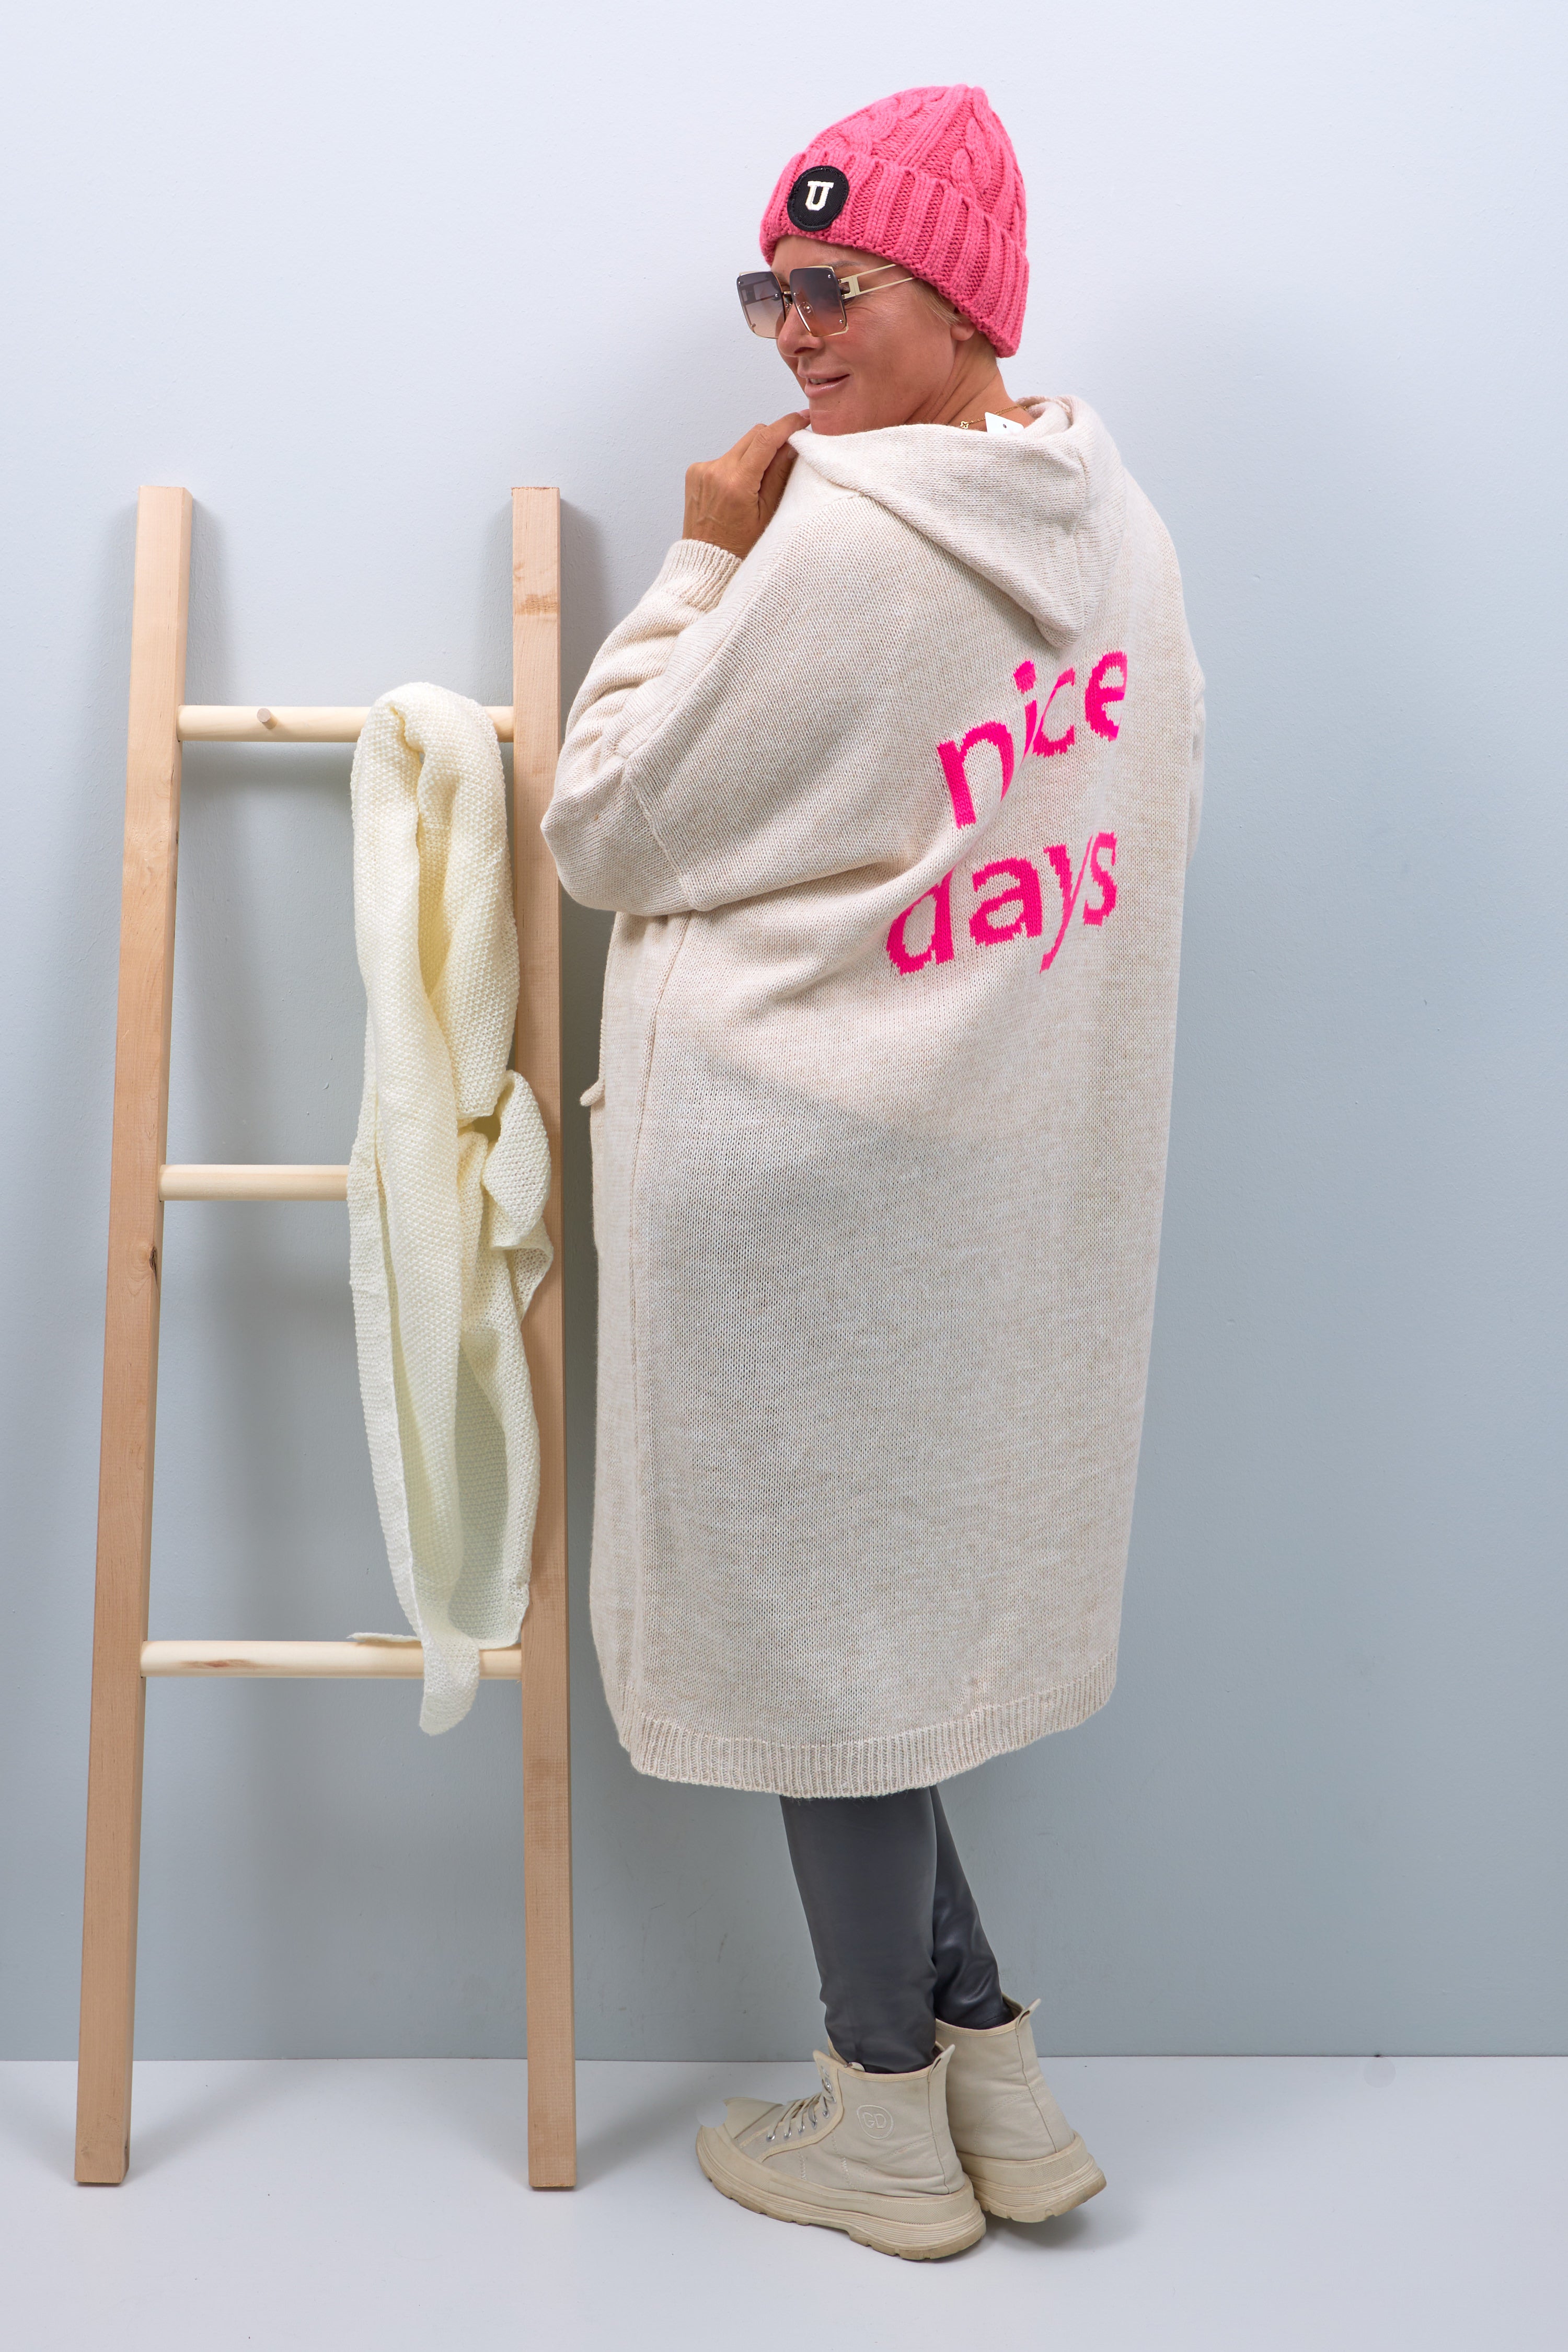 Lange Strickjacke mit Kapuze und Schriftzug "nice days", beige-pink